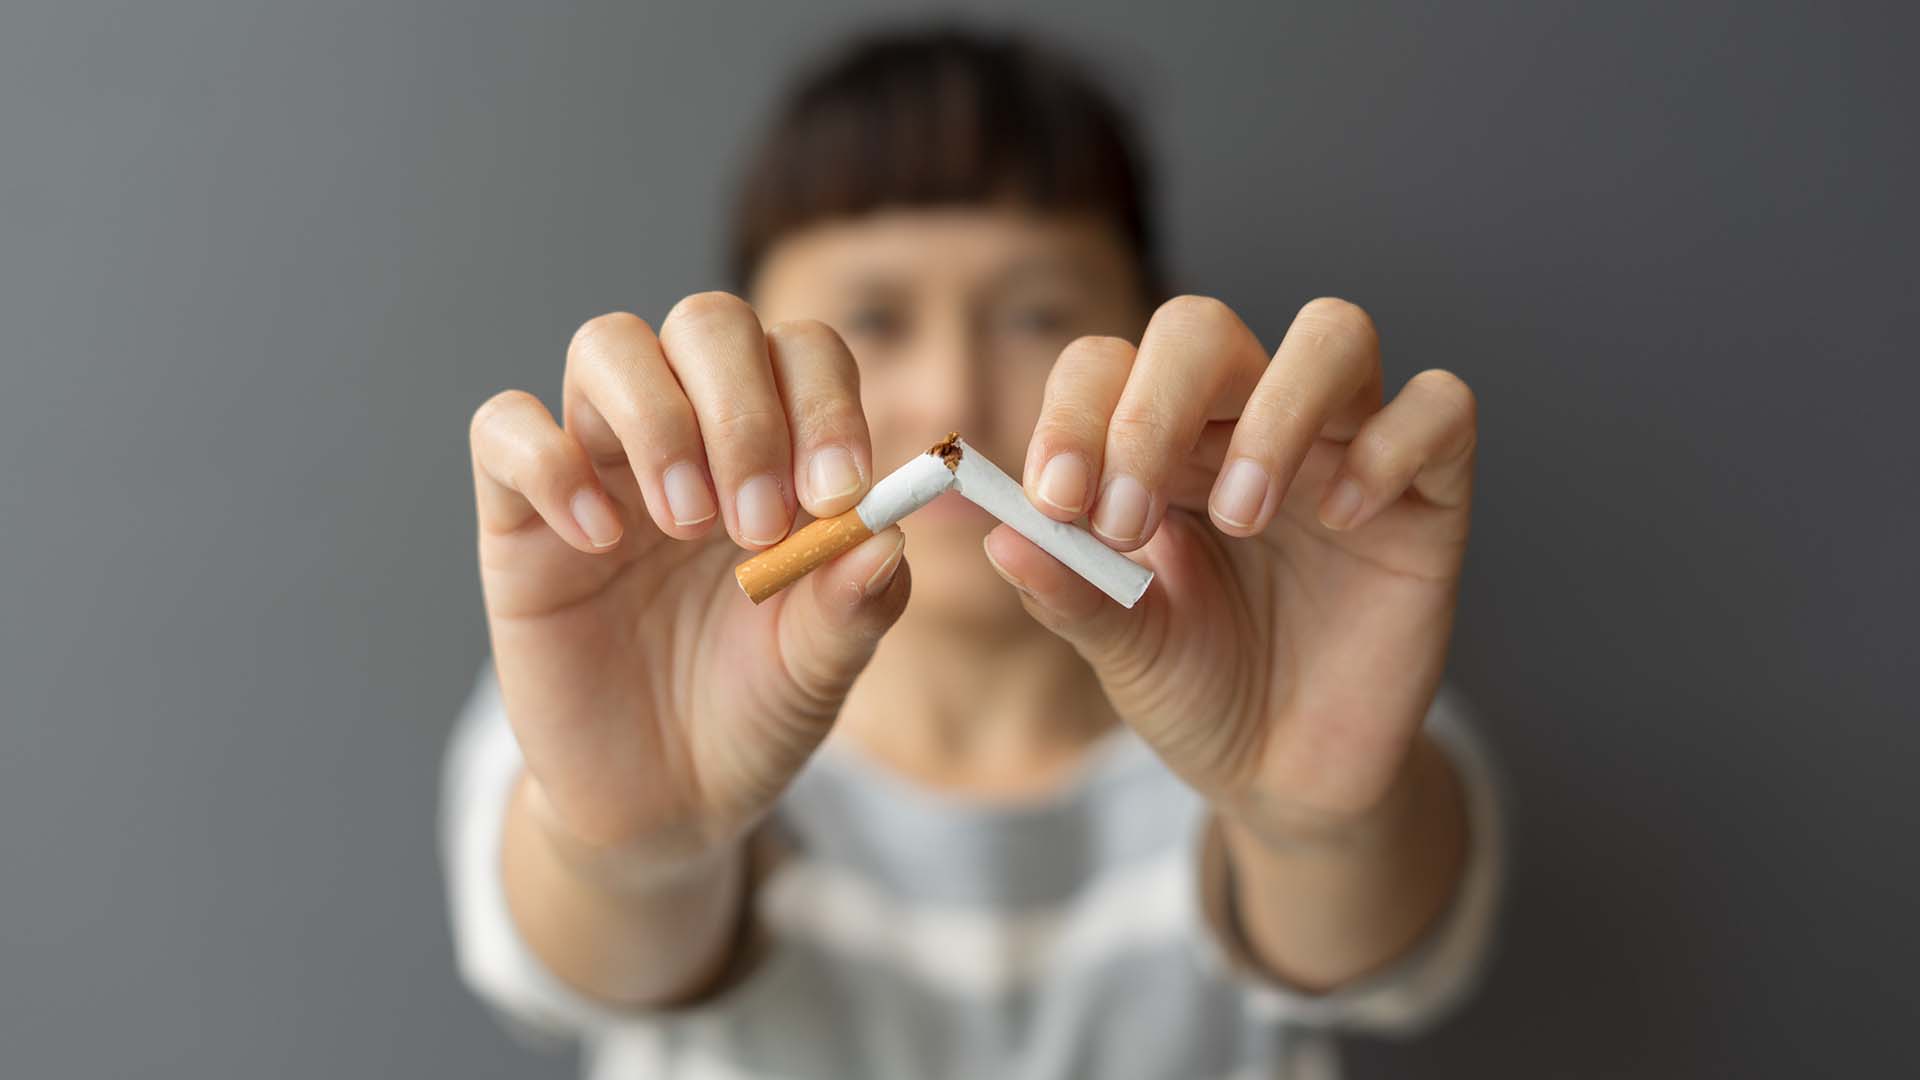 Fumar altera el cerebro dañando la memoria, el aprendizaje y el razonamiento (Getty Images)